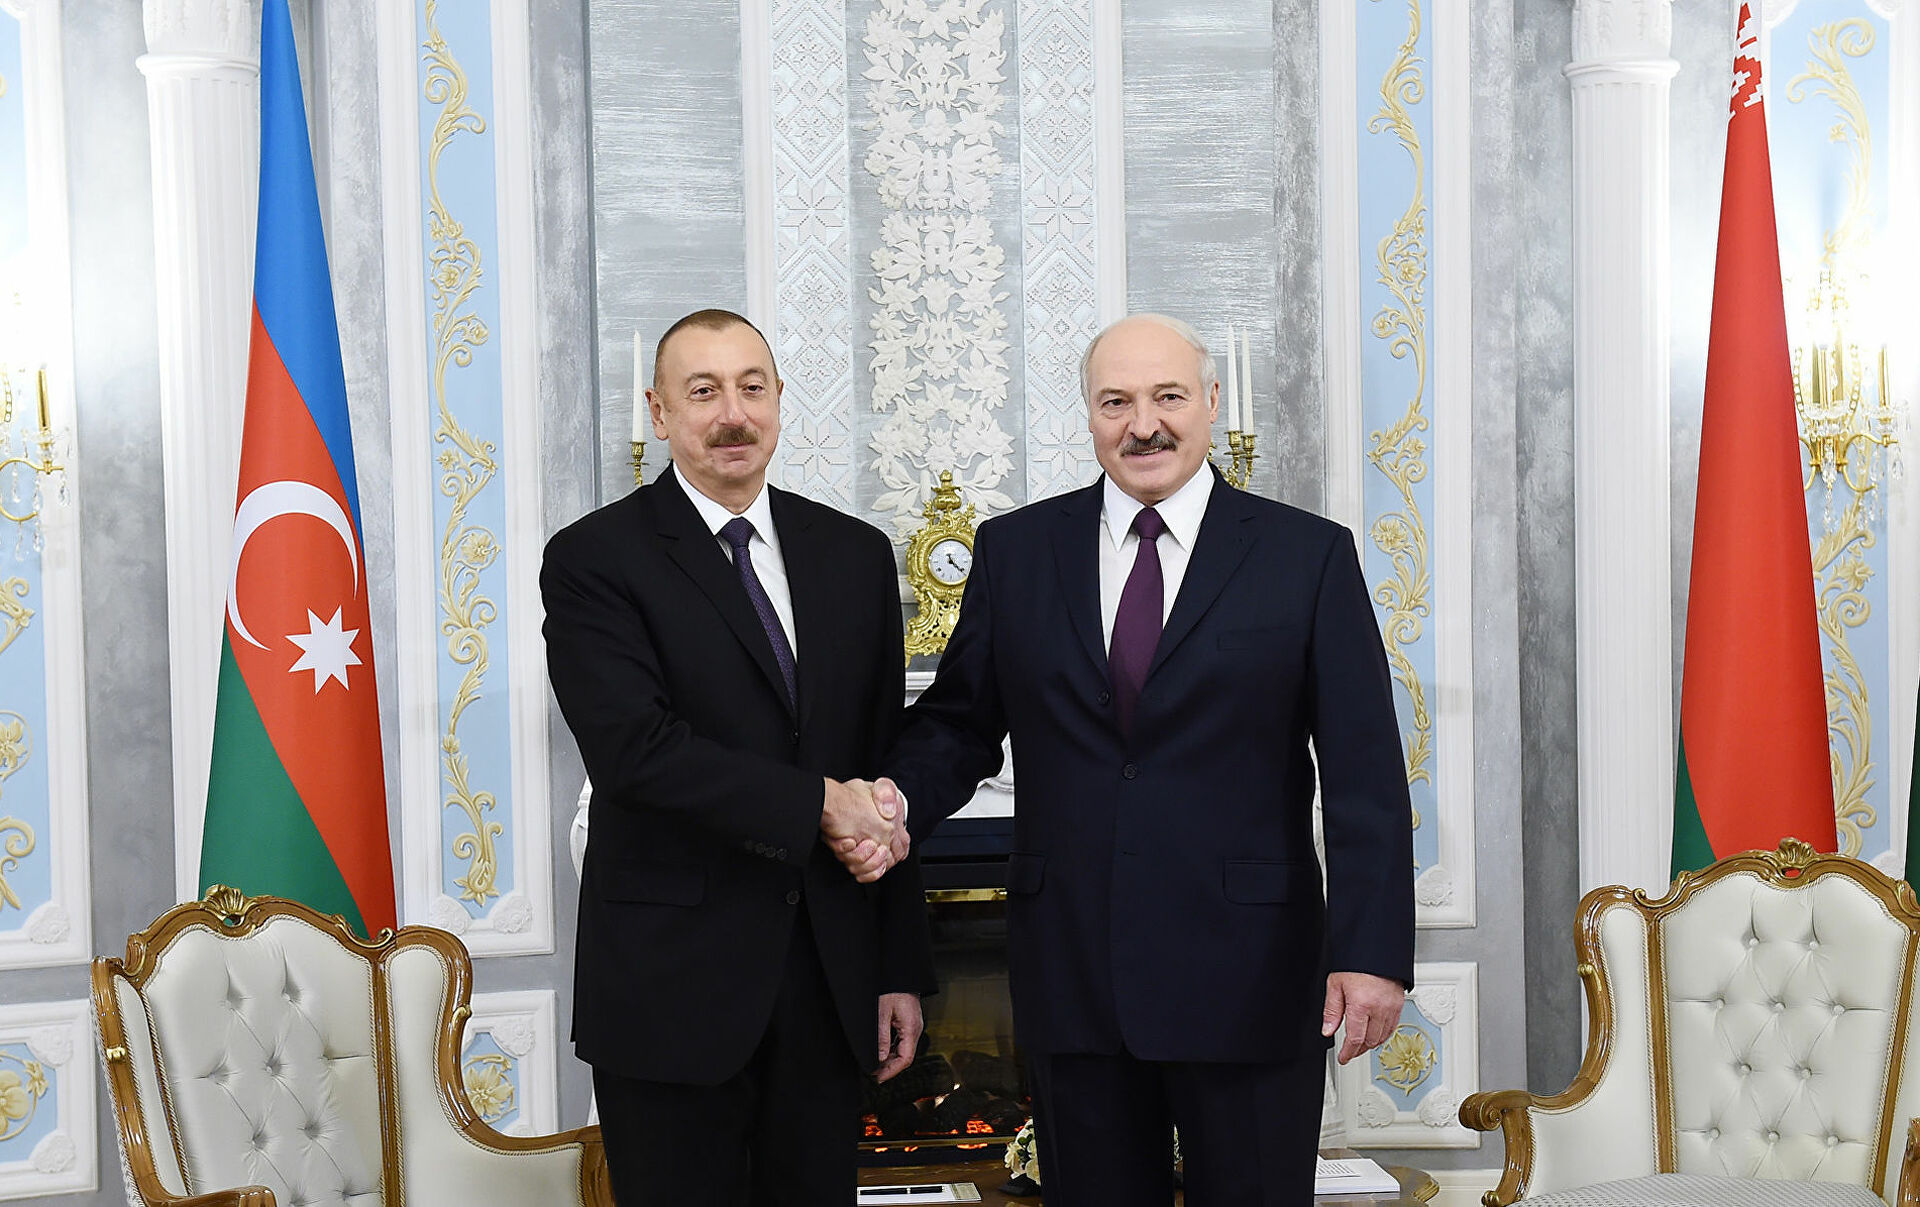 Əliyev Lukaşenko ilə Soçi görüşünü müzakirə etdi